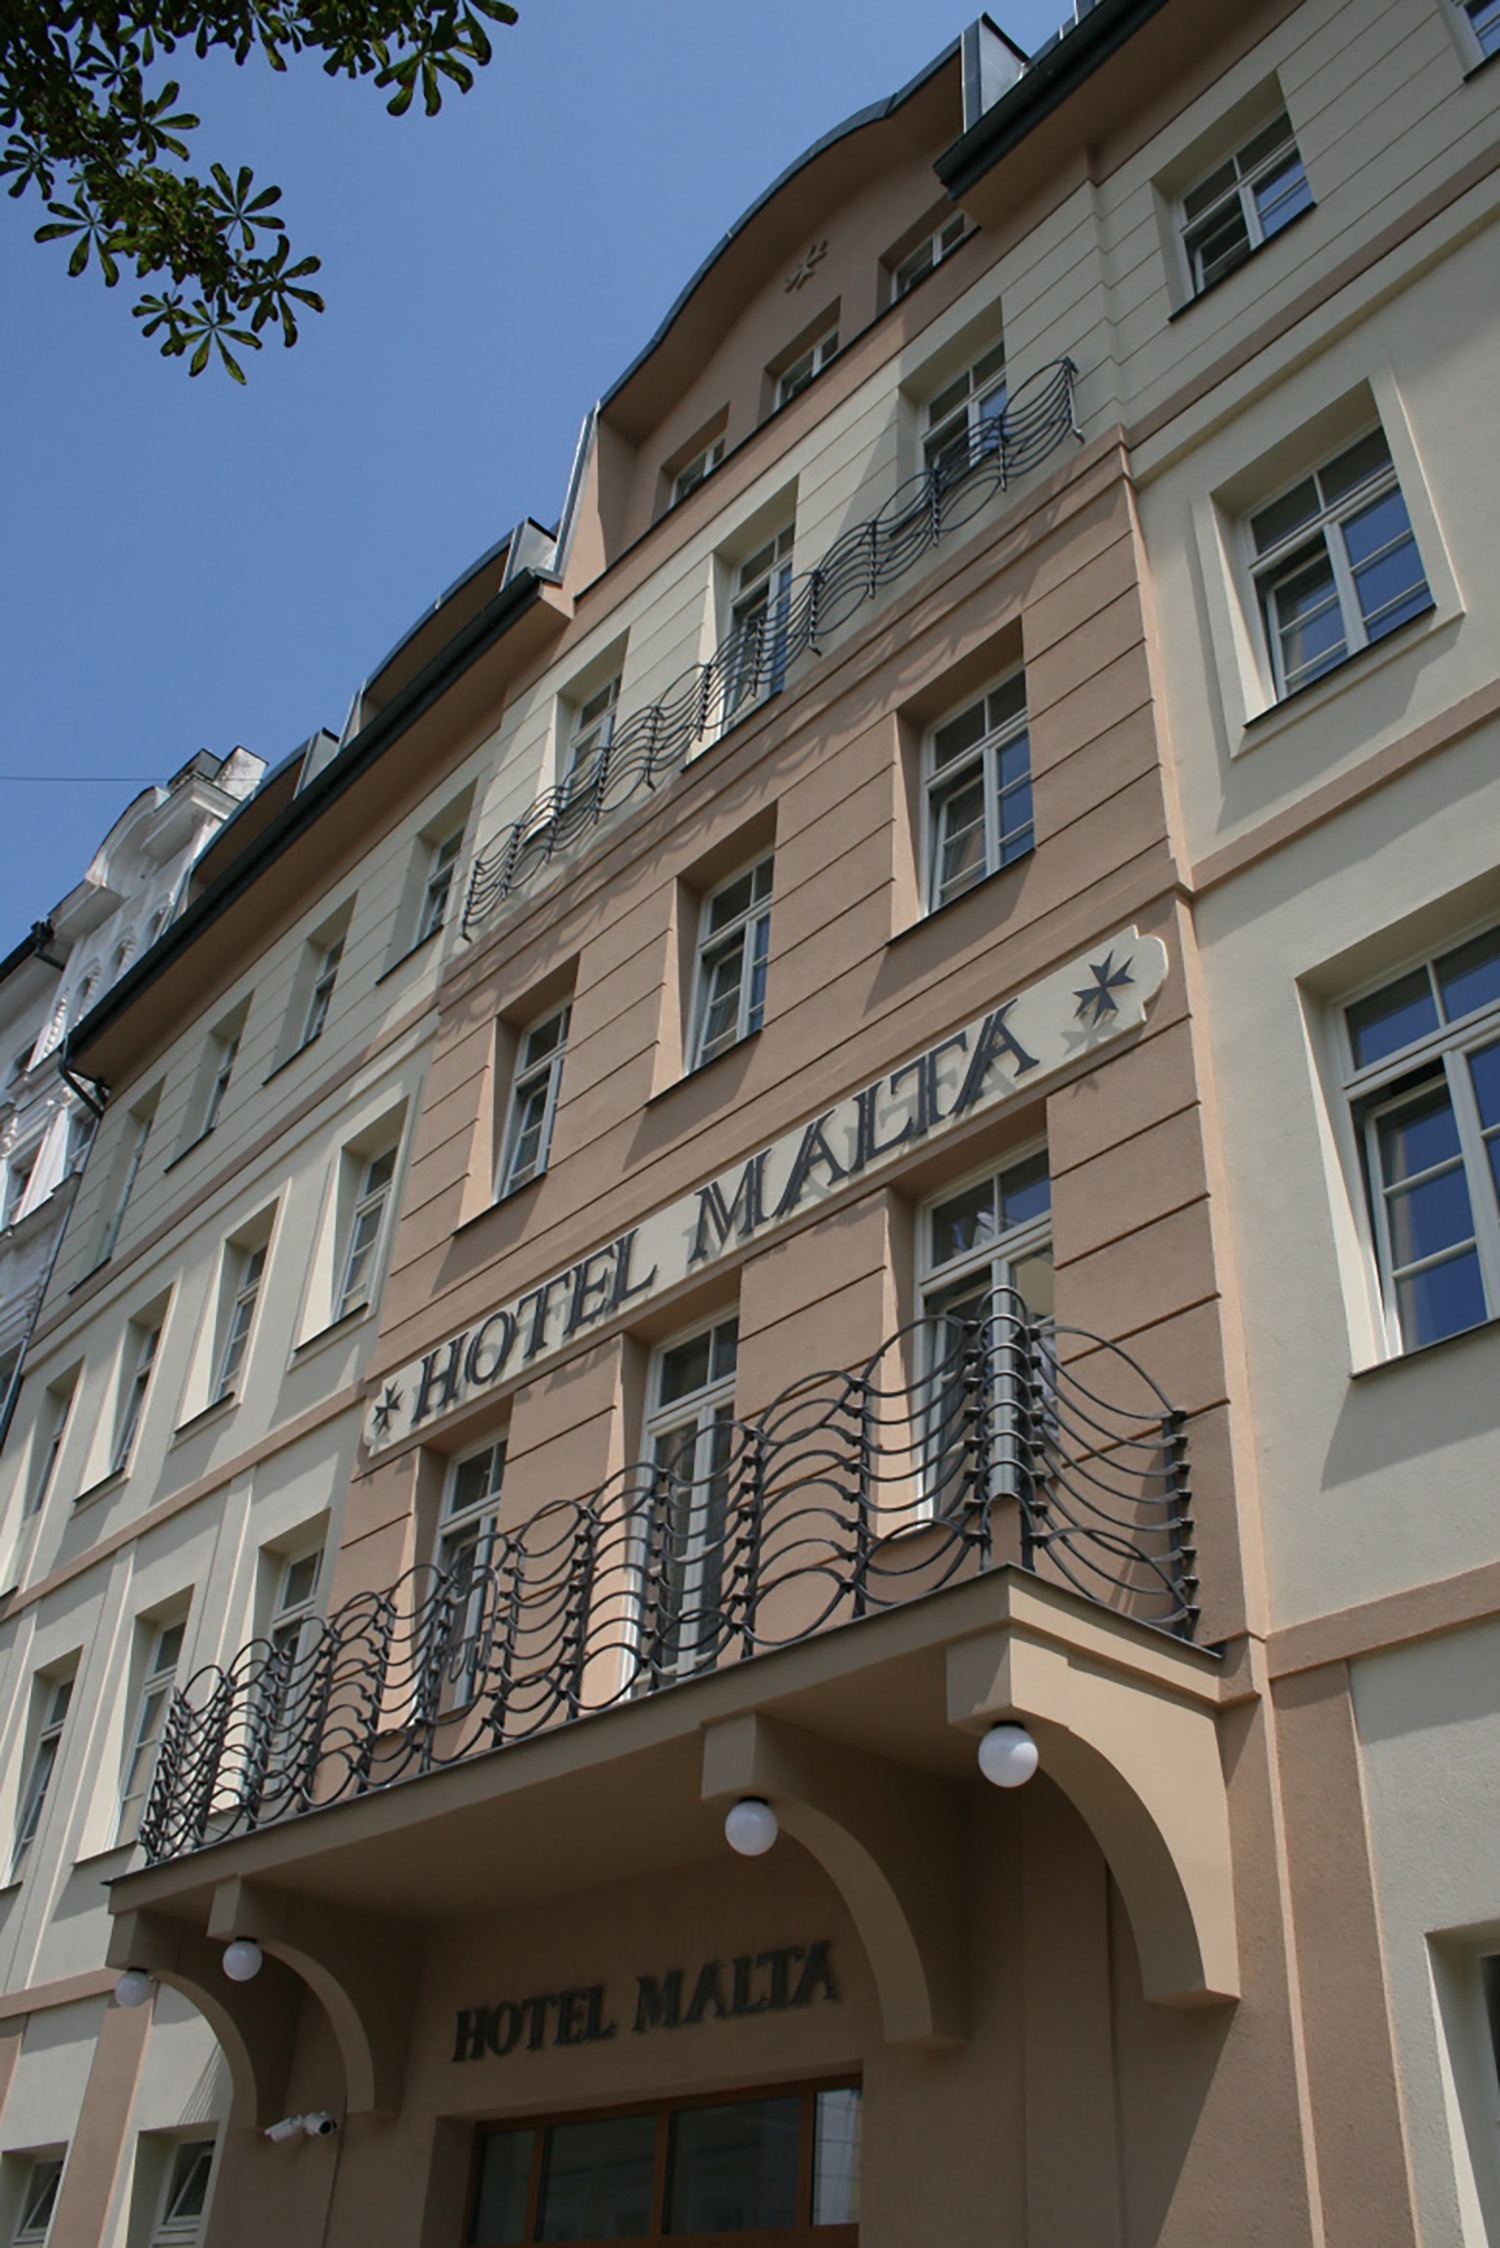 Hotelu Malta Karlovy Vary 21